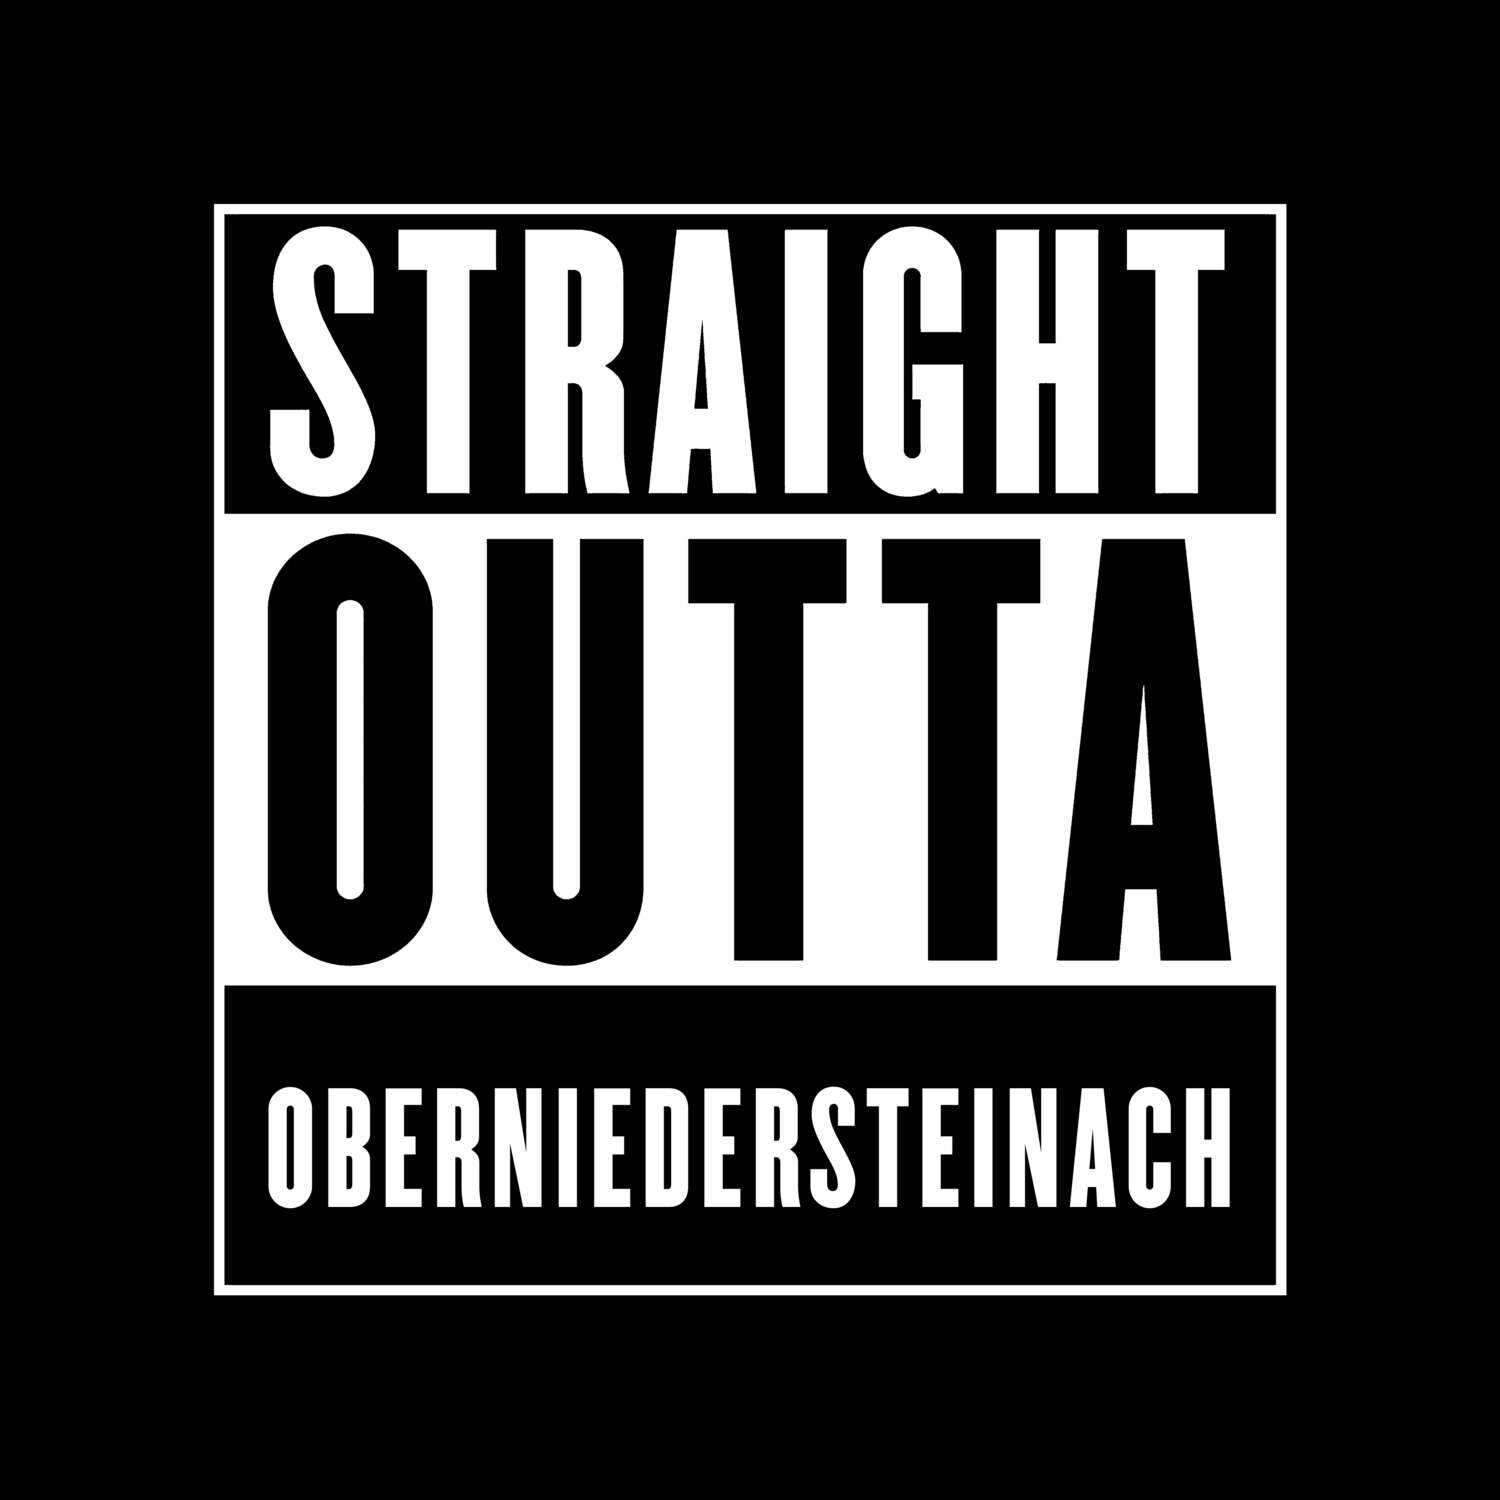 Oberniedersteinach T-Shirt »Straight Outta«